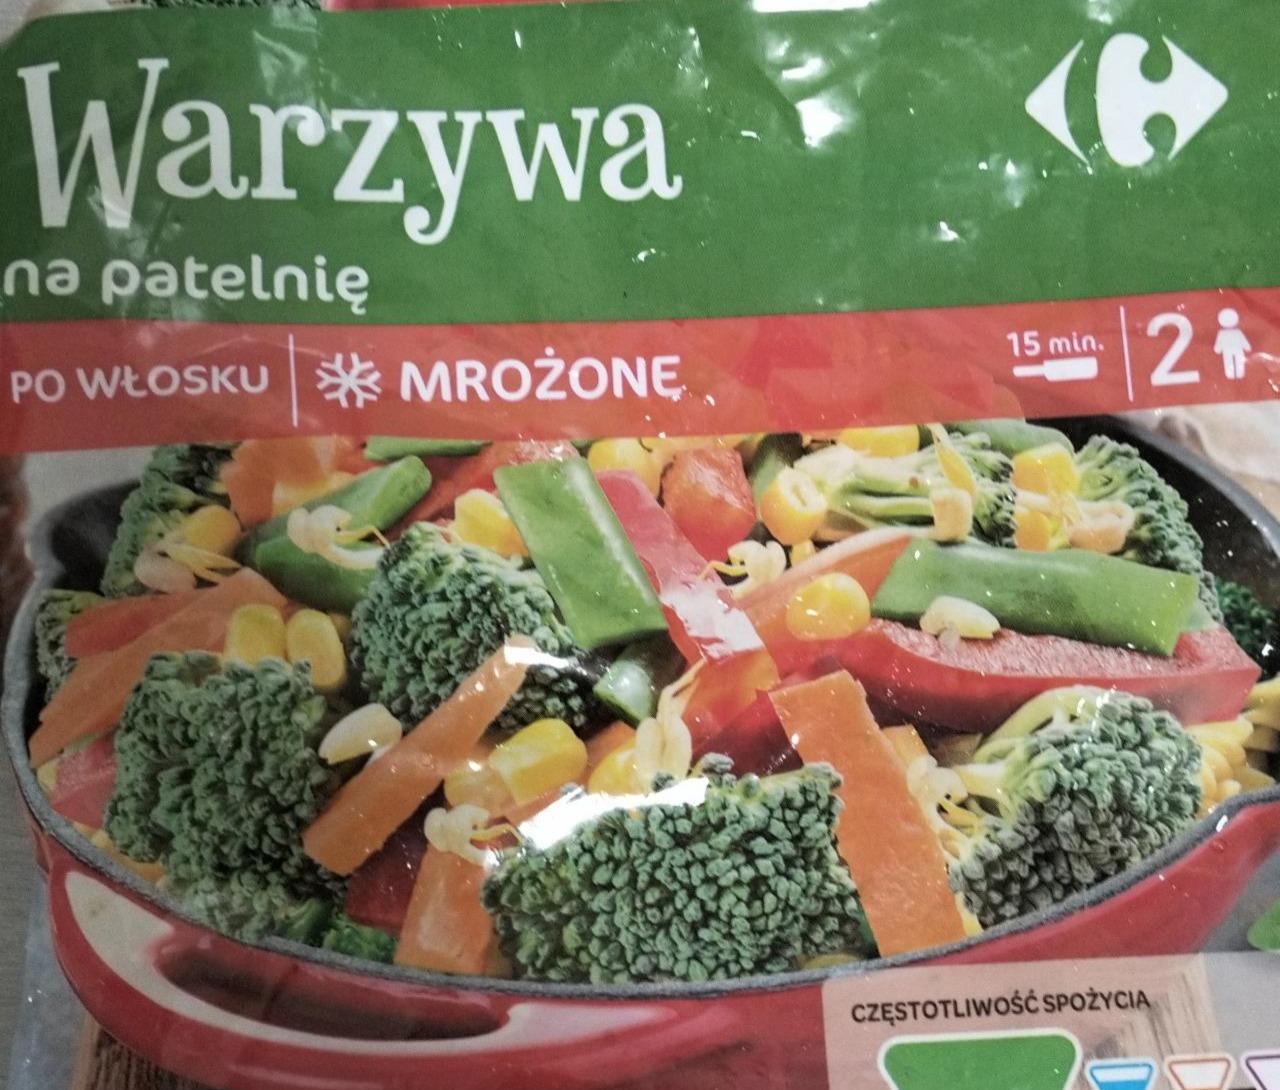 Фото - Warzywa na patelnię po włosku mrożone Carrefour